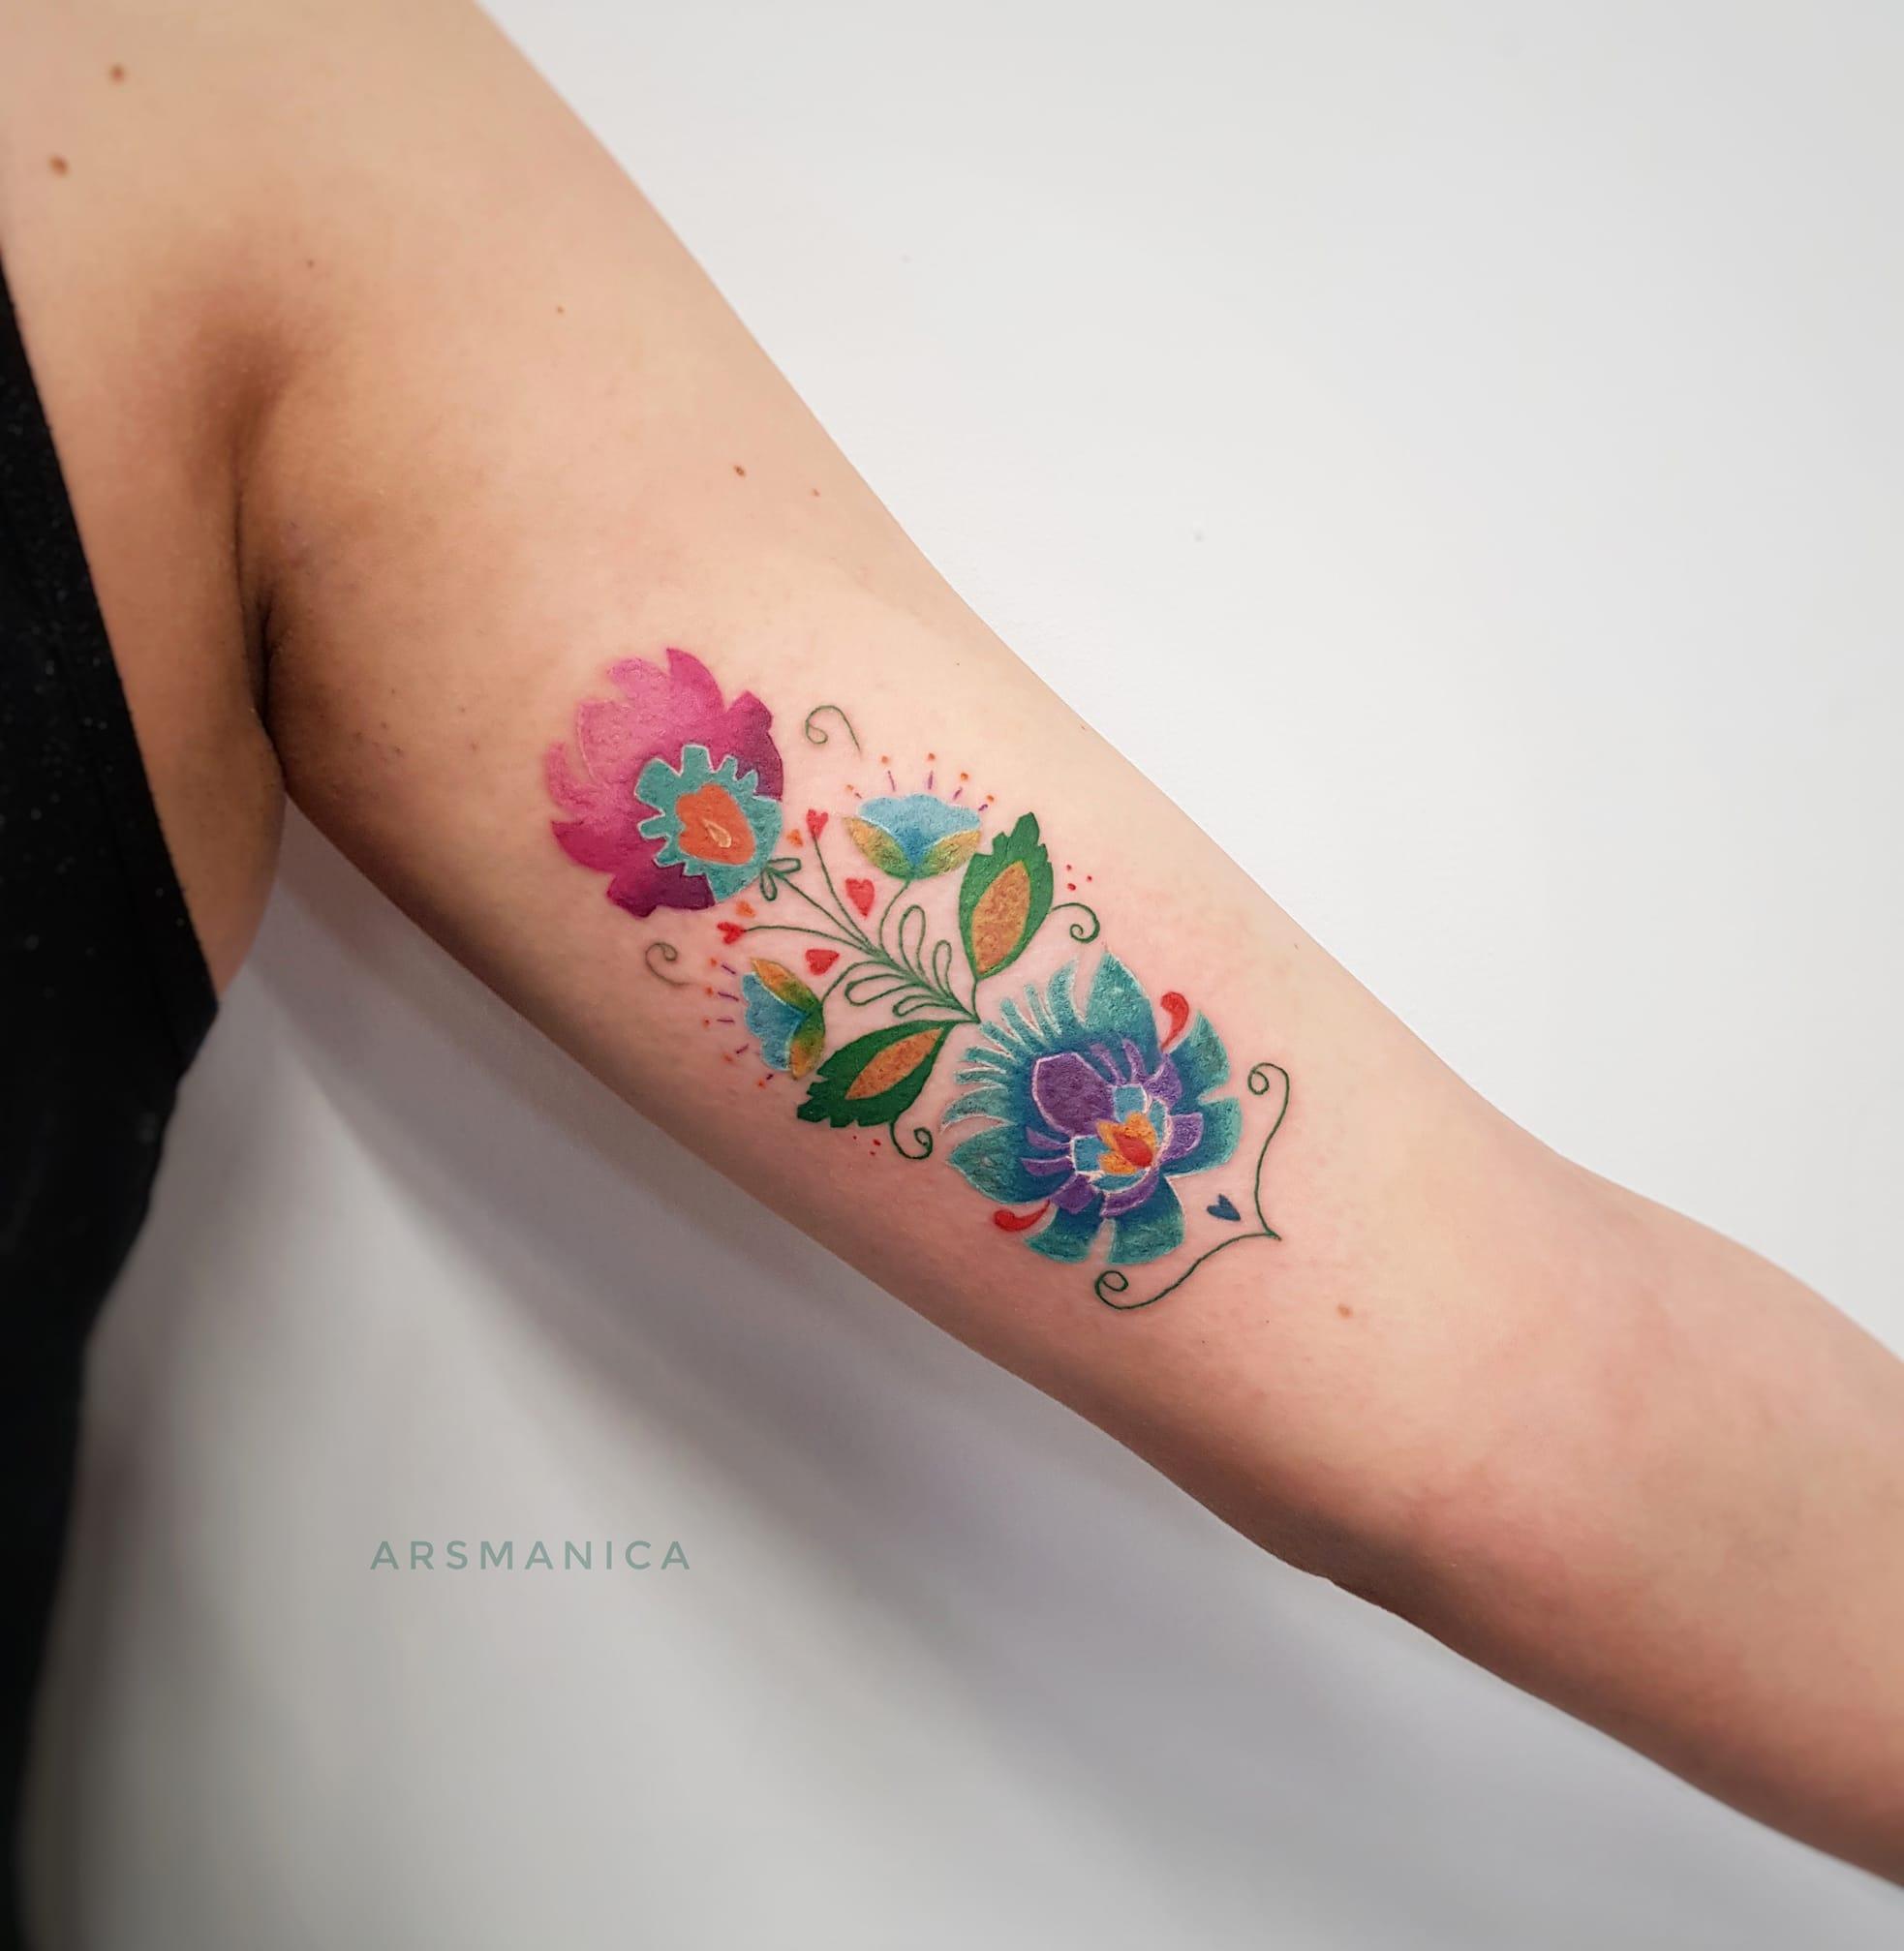 Inksearch tattoo Anna Jakubiec aka Arsmanica